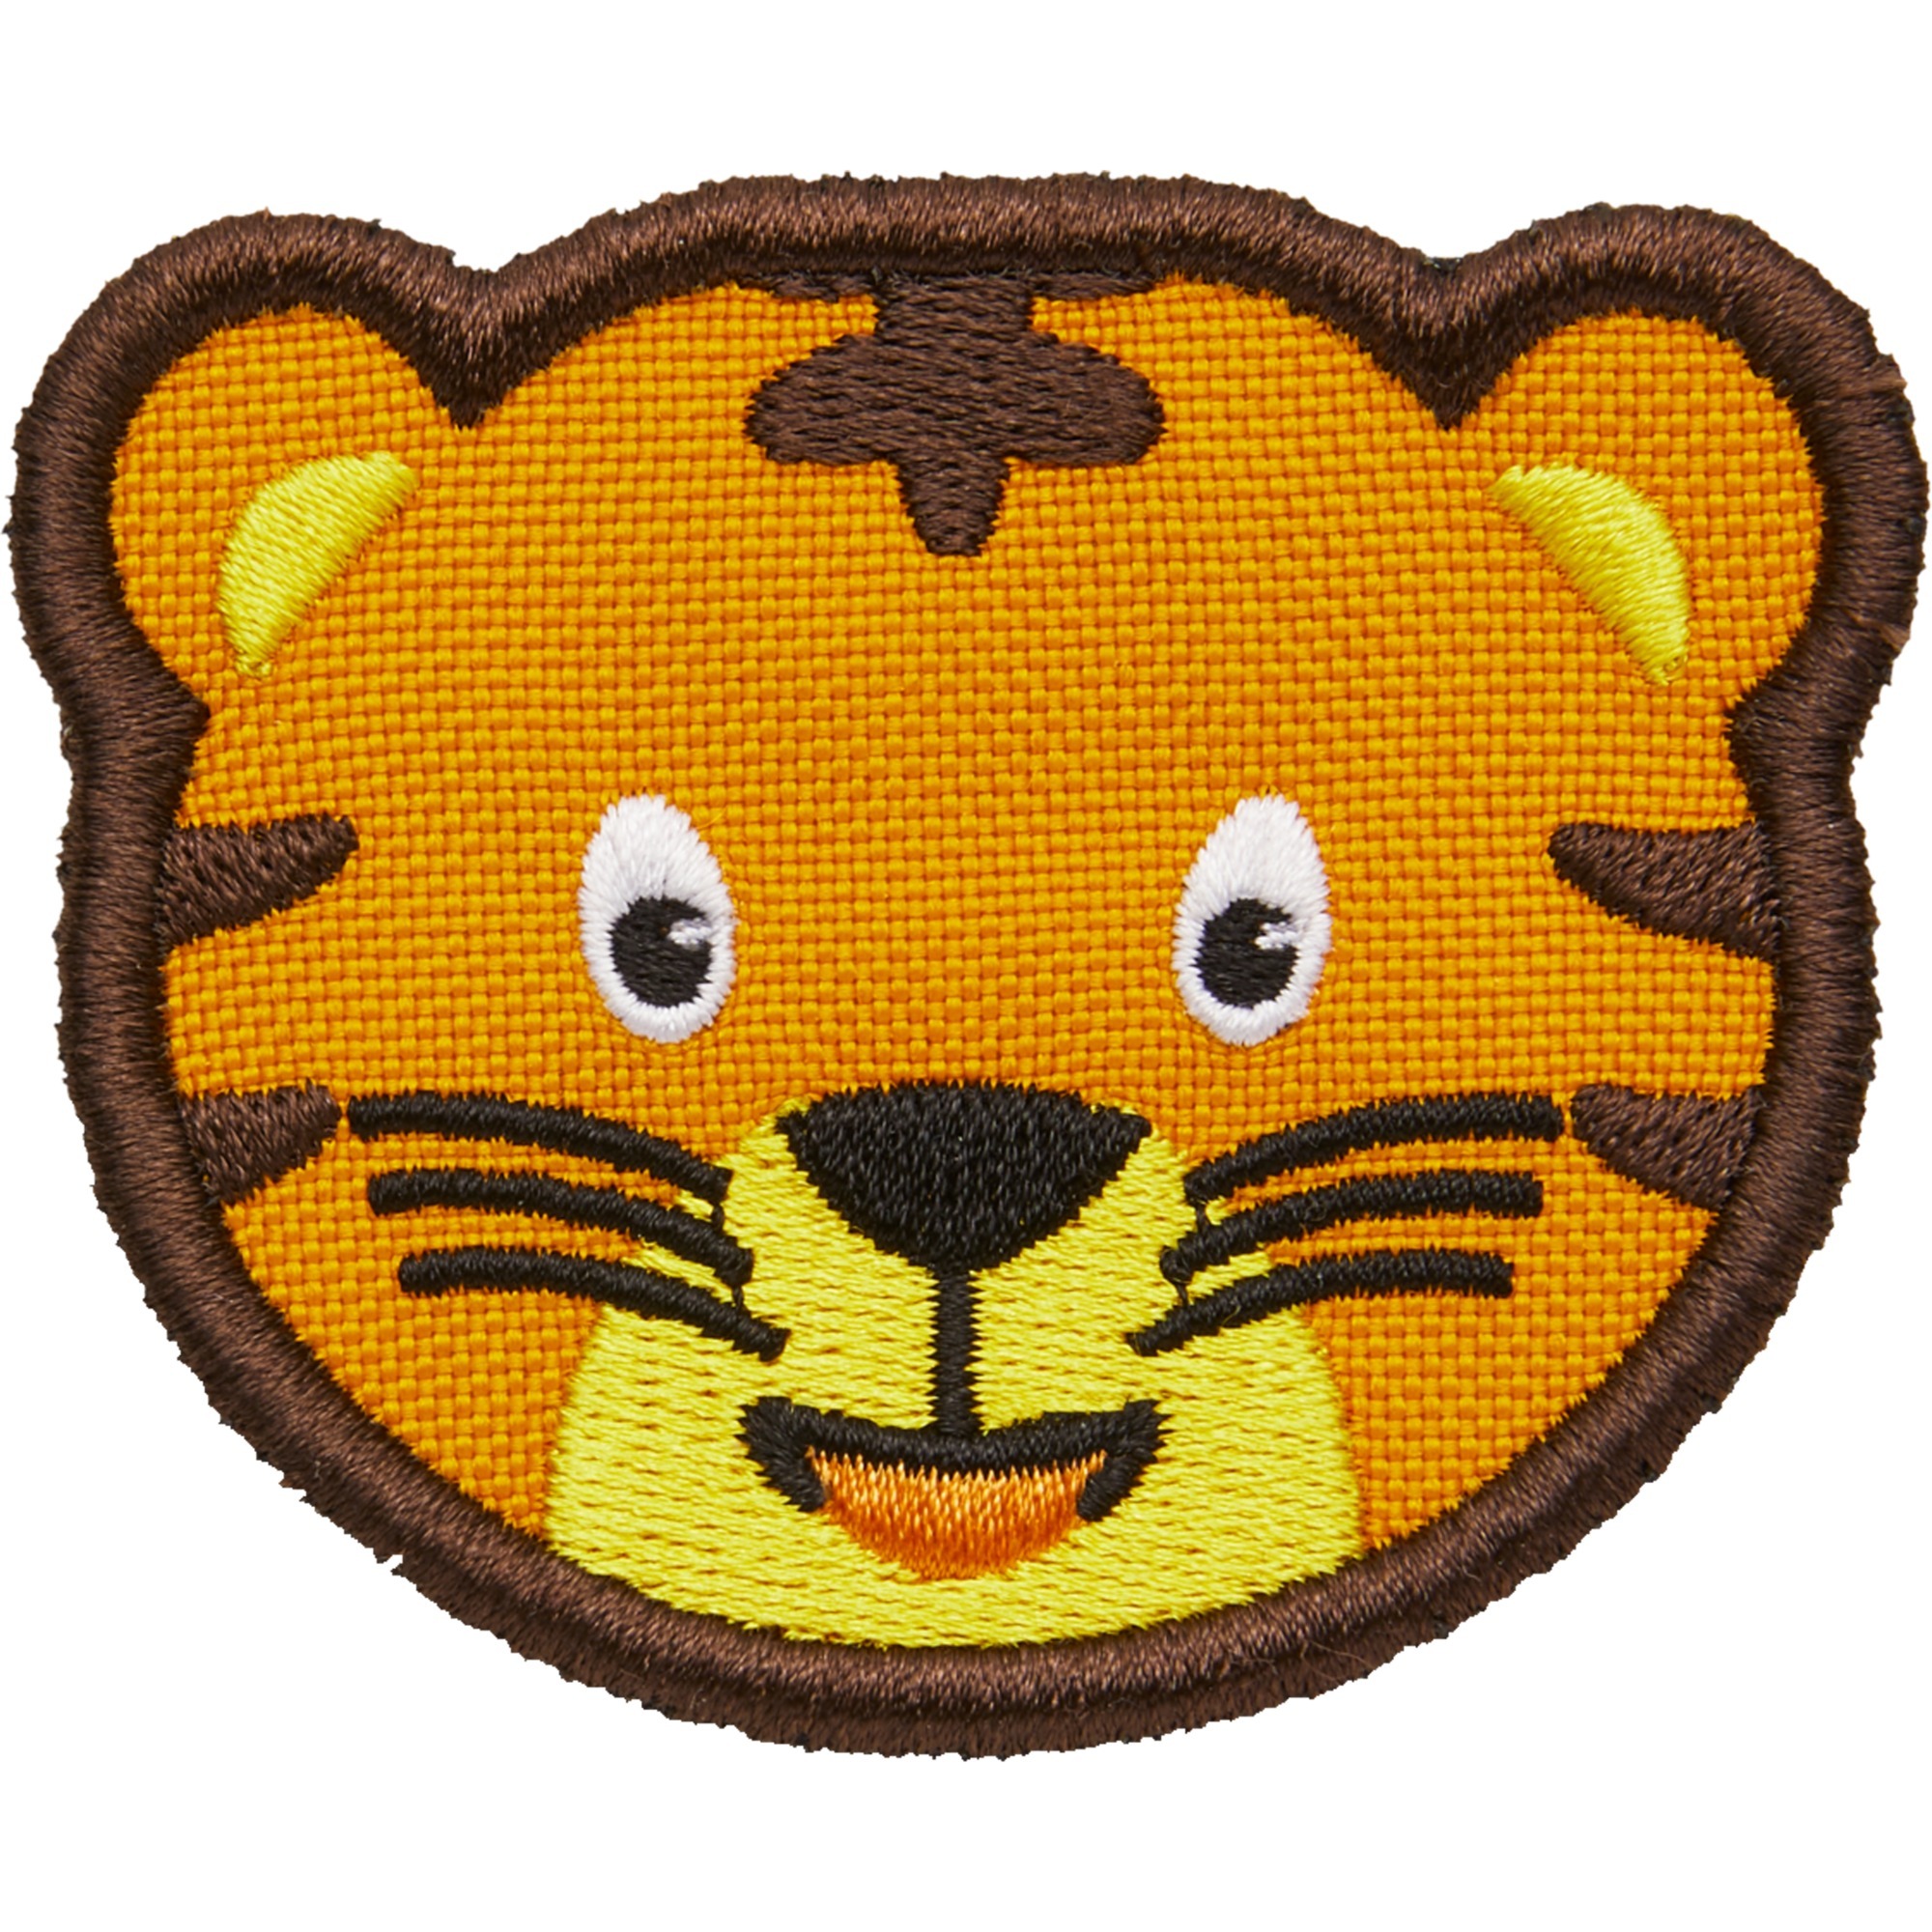 Image of Alternate - Klett-Badge Tiger, Patch online einkaufen bei Alternate